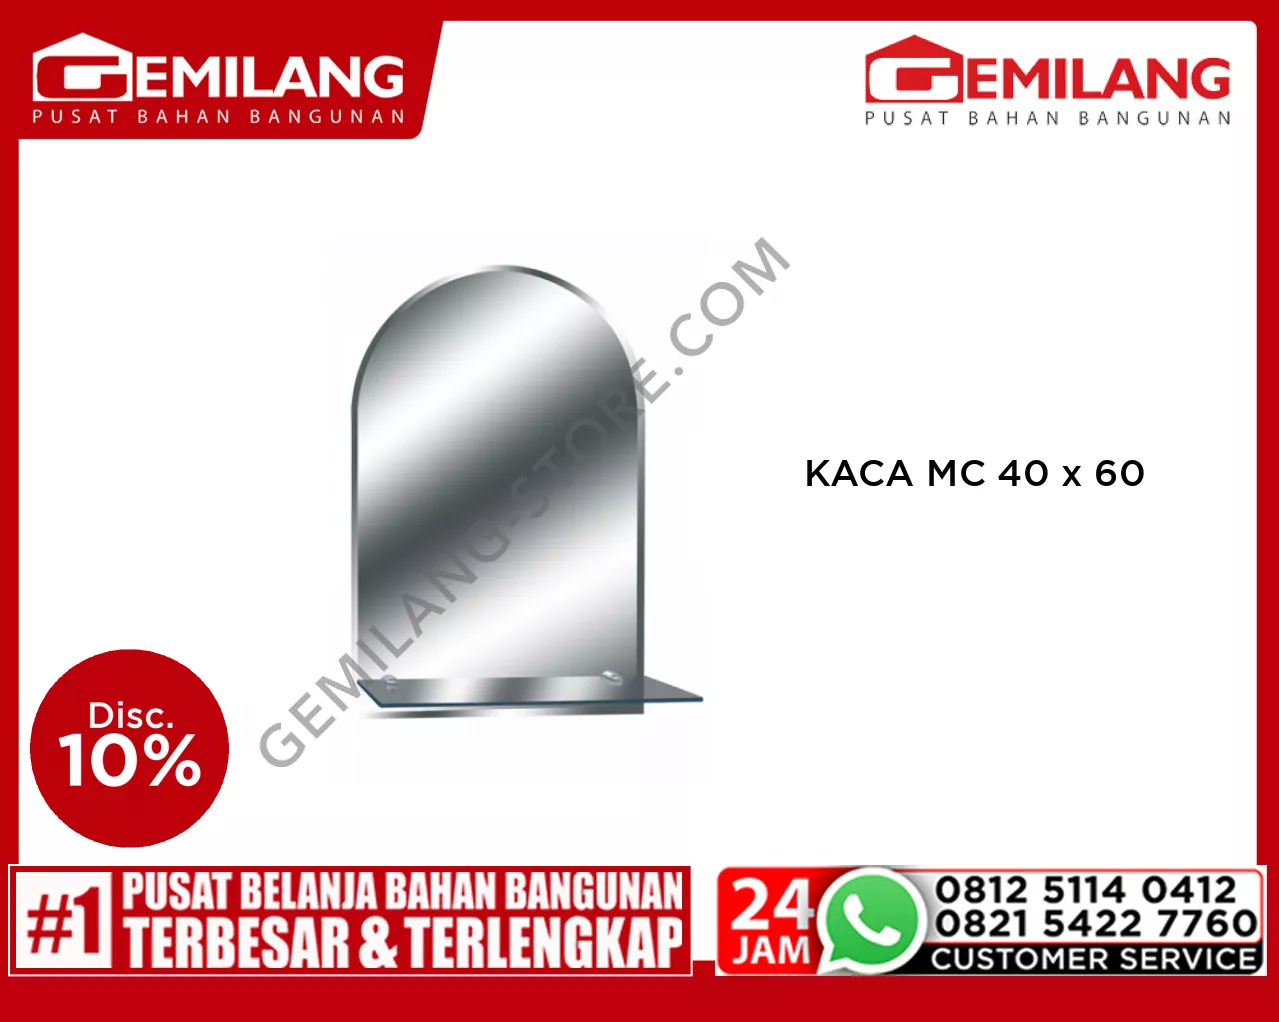 KACA MC 40 x 60